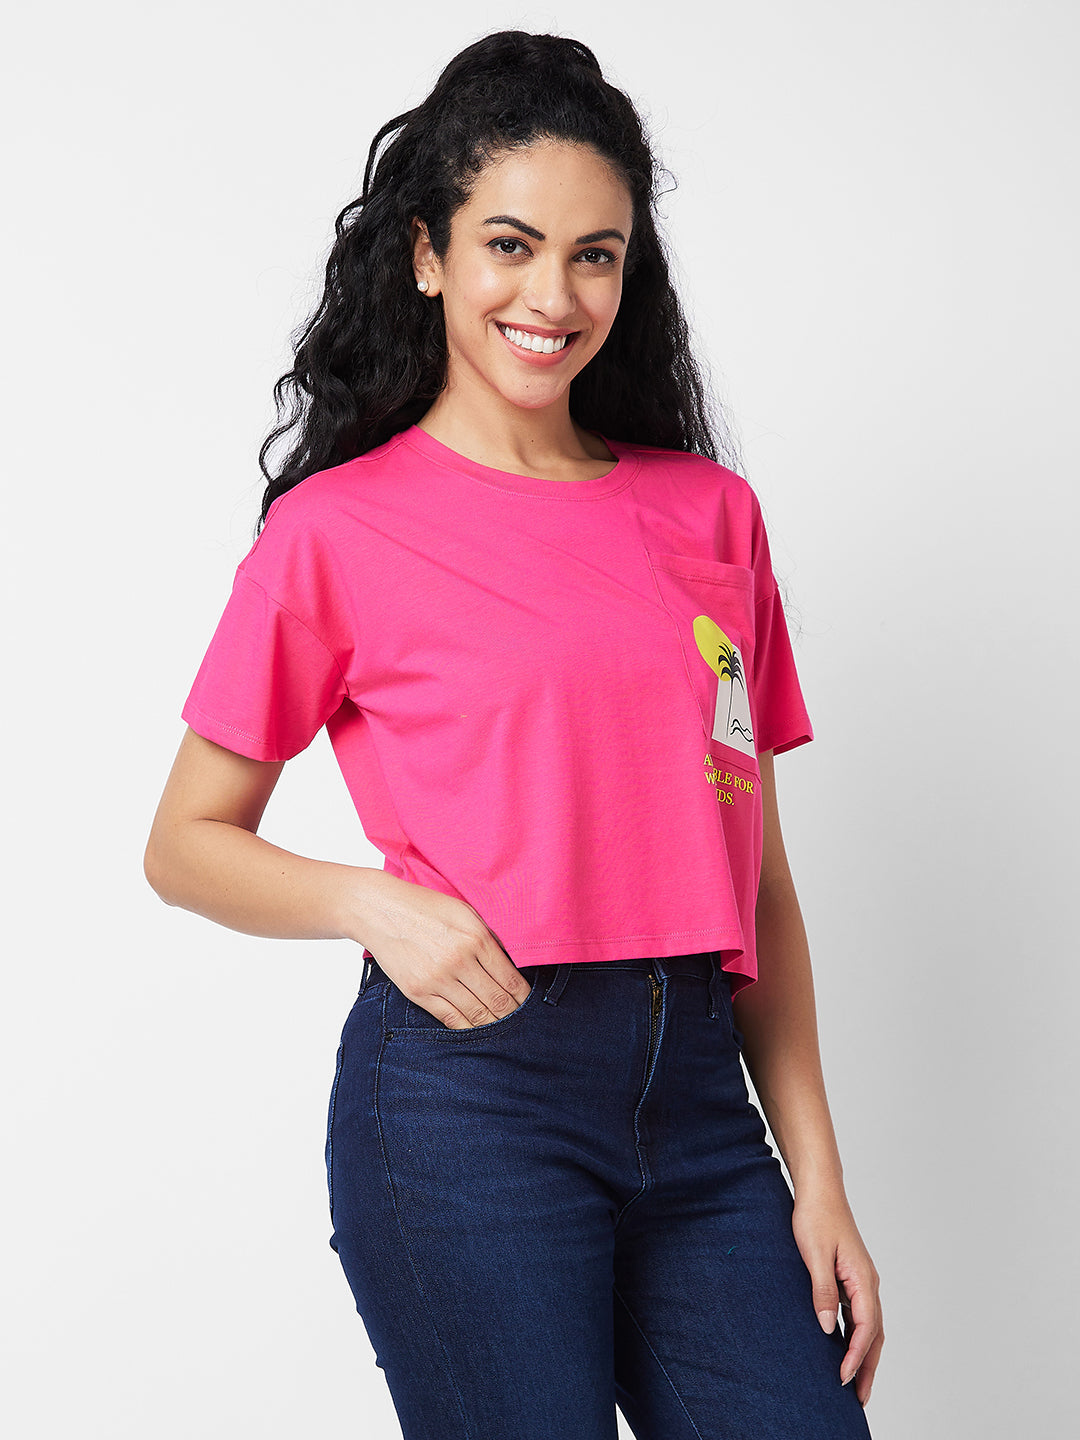 Spykar Round Neck Half Sleeves Pink T-shirt  For Women